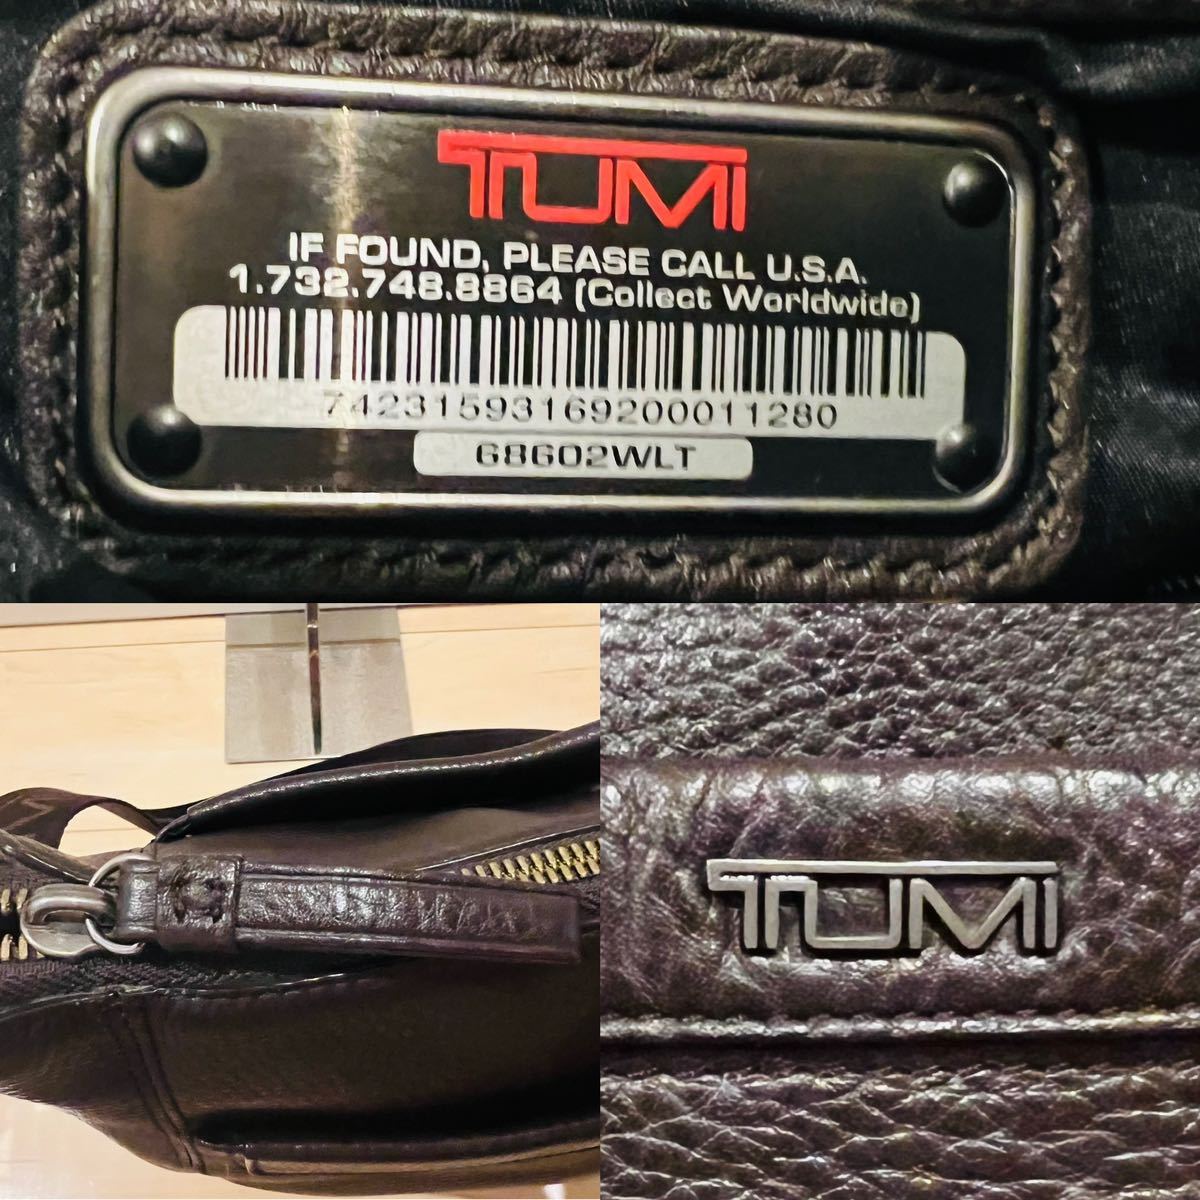 【美品】TUMI トゥミ ショルダーバッグ クロスボディバッグ ダークブラウン 68602WLT袋付き！_画像9